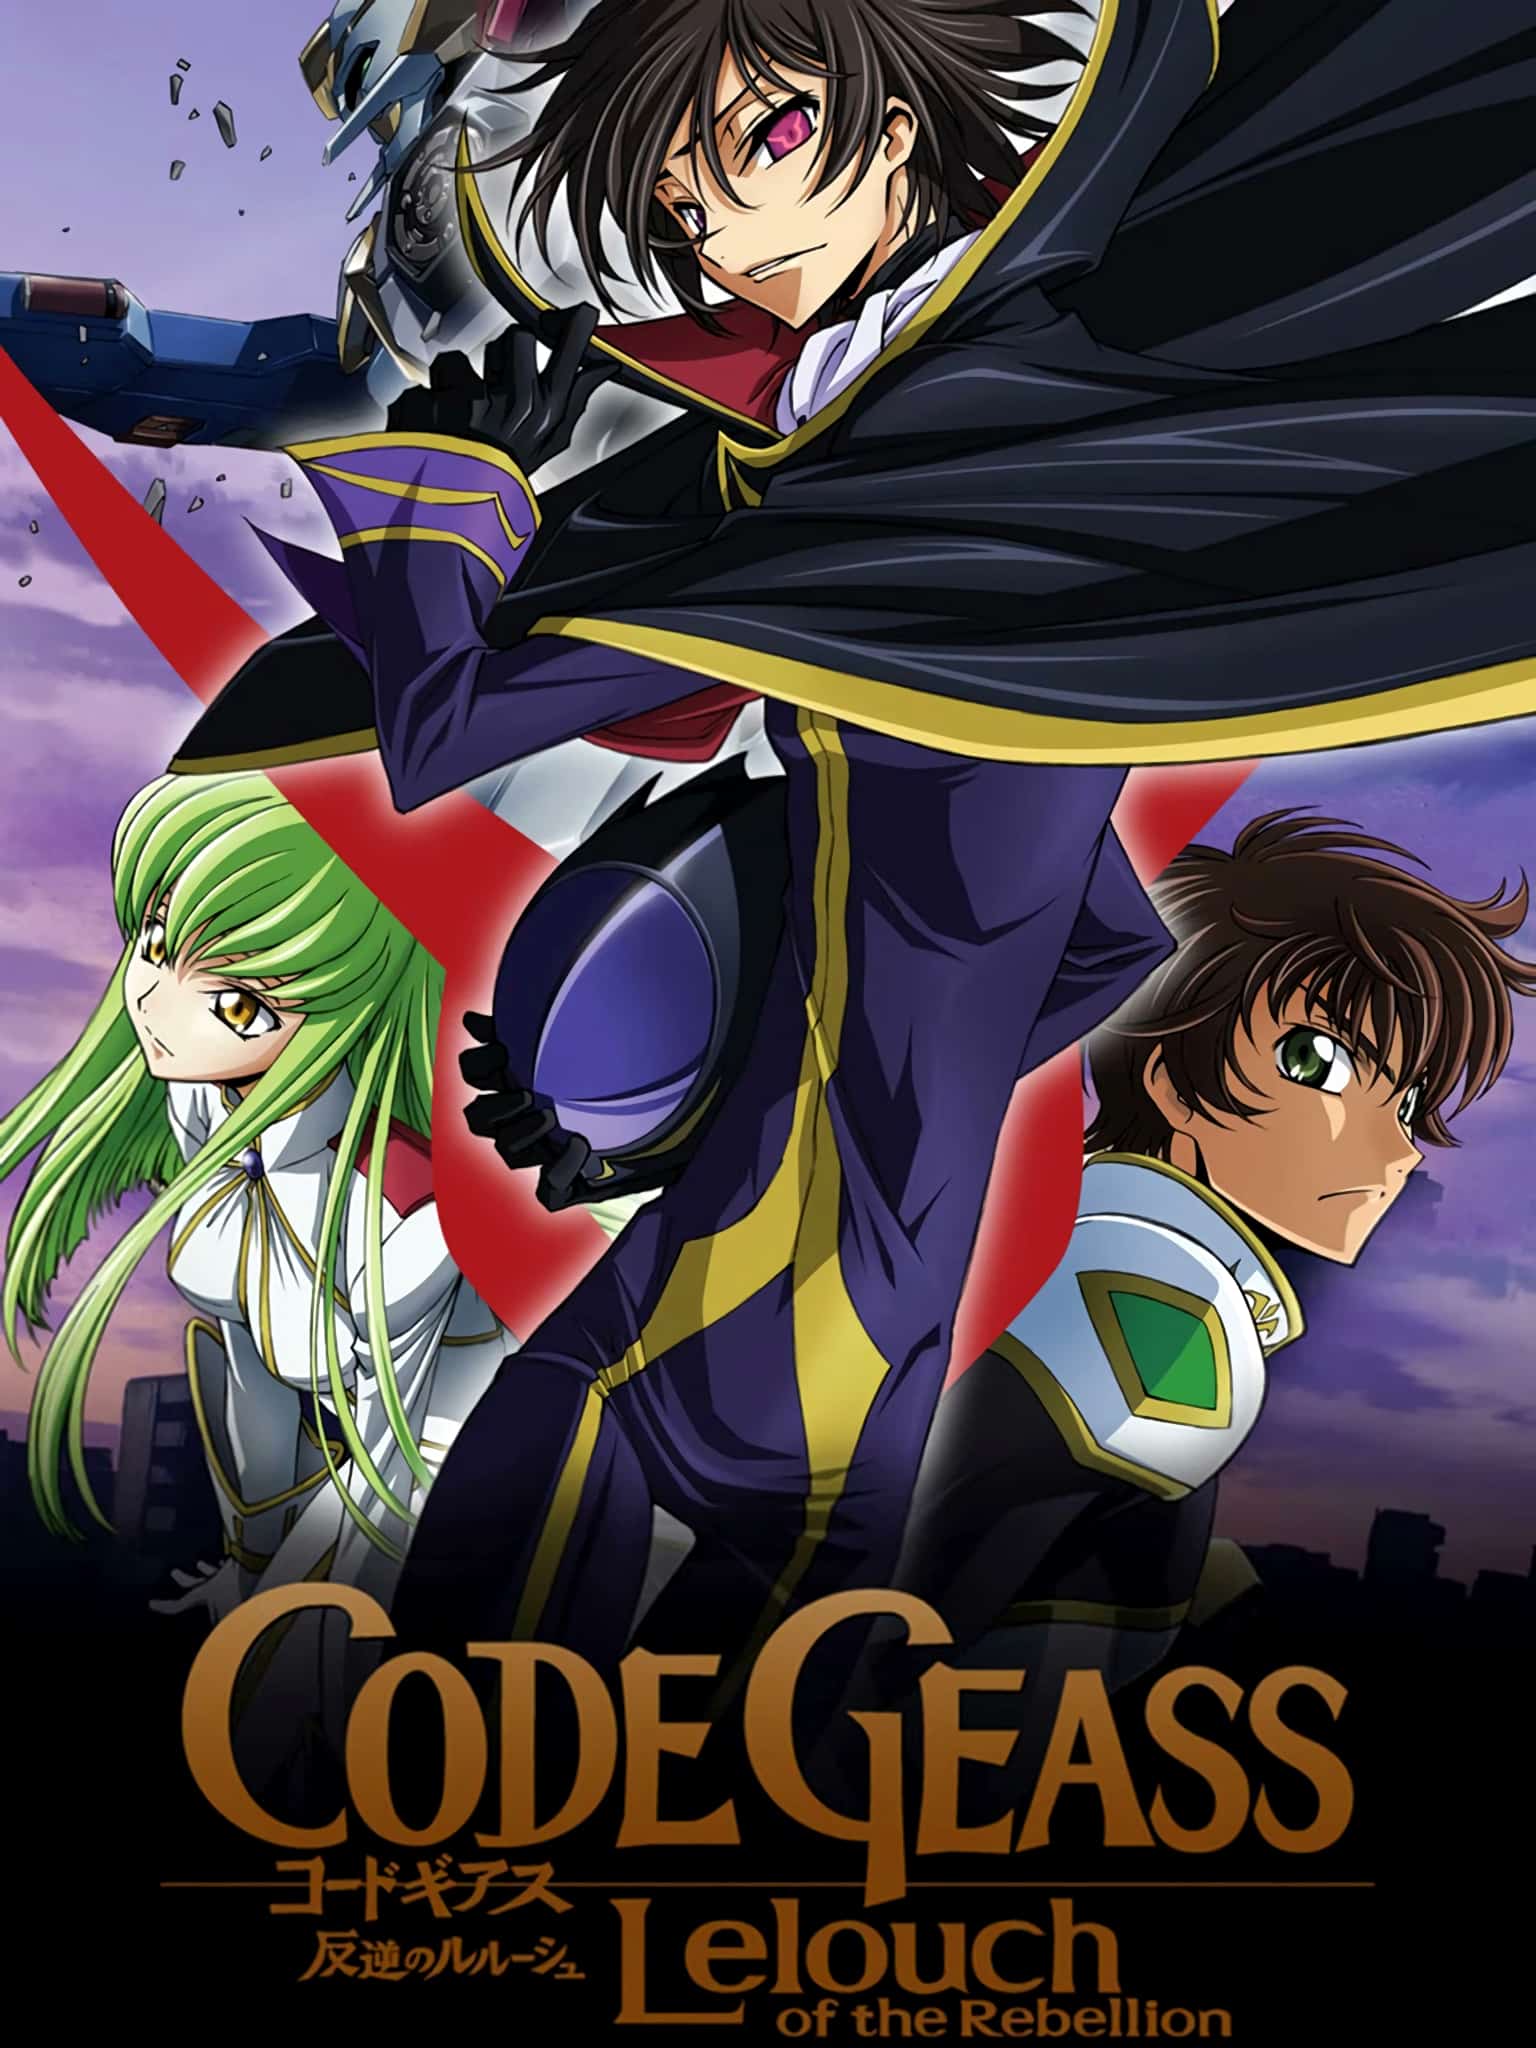 Code Geass parmi les 10 animes à regarder pour commencer